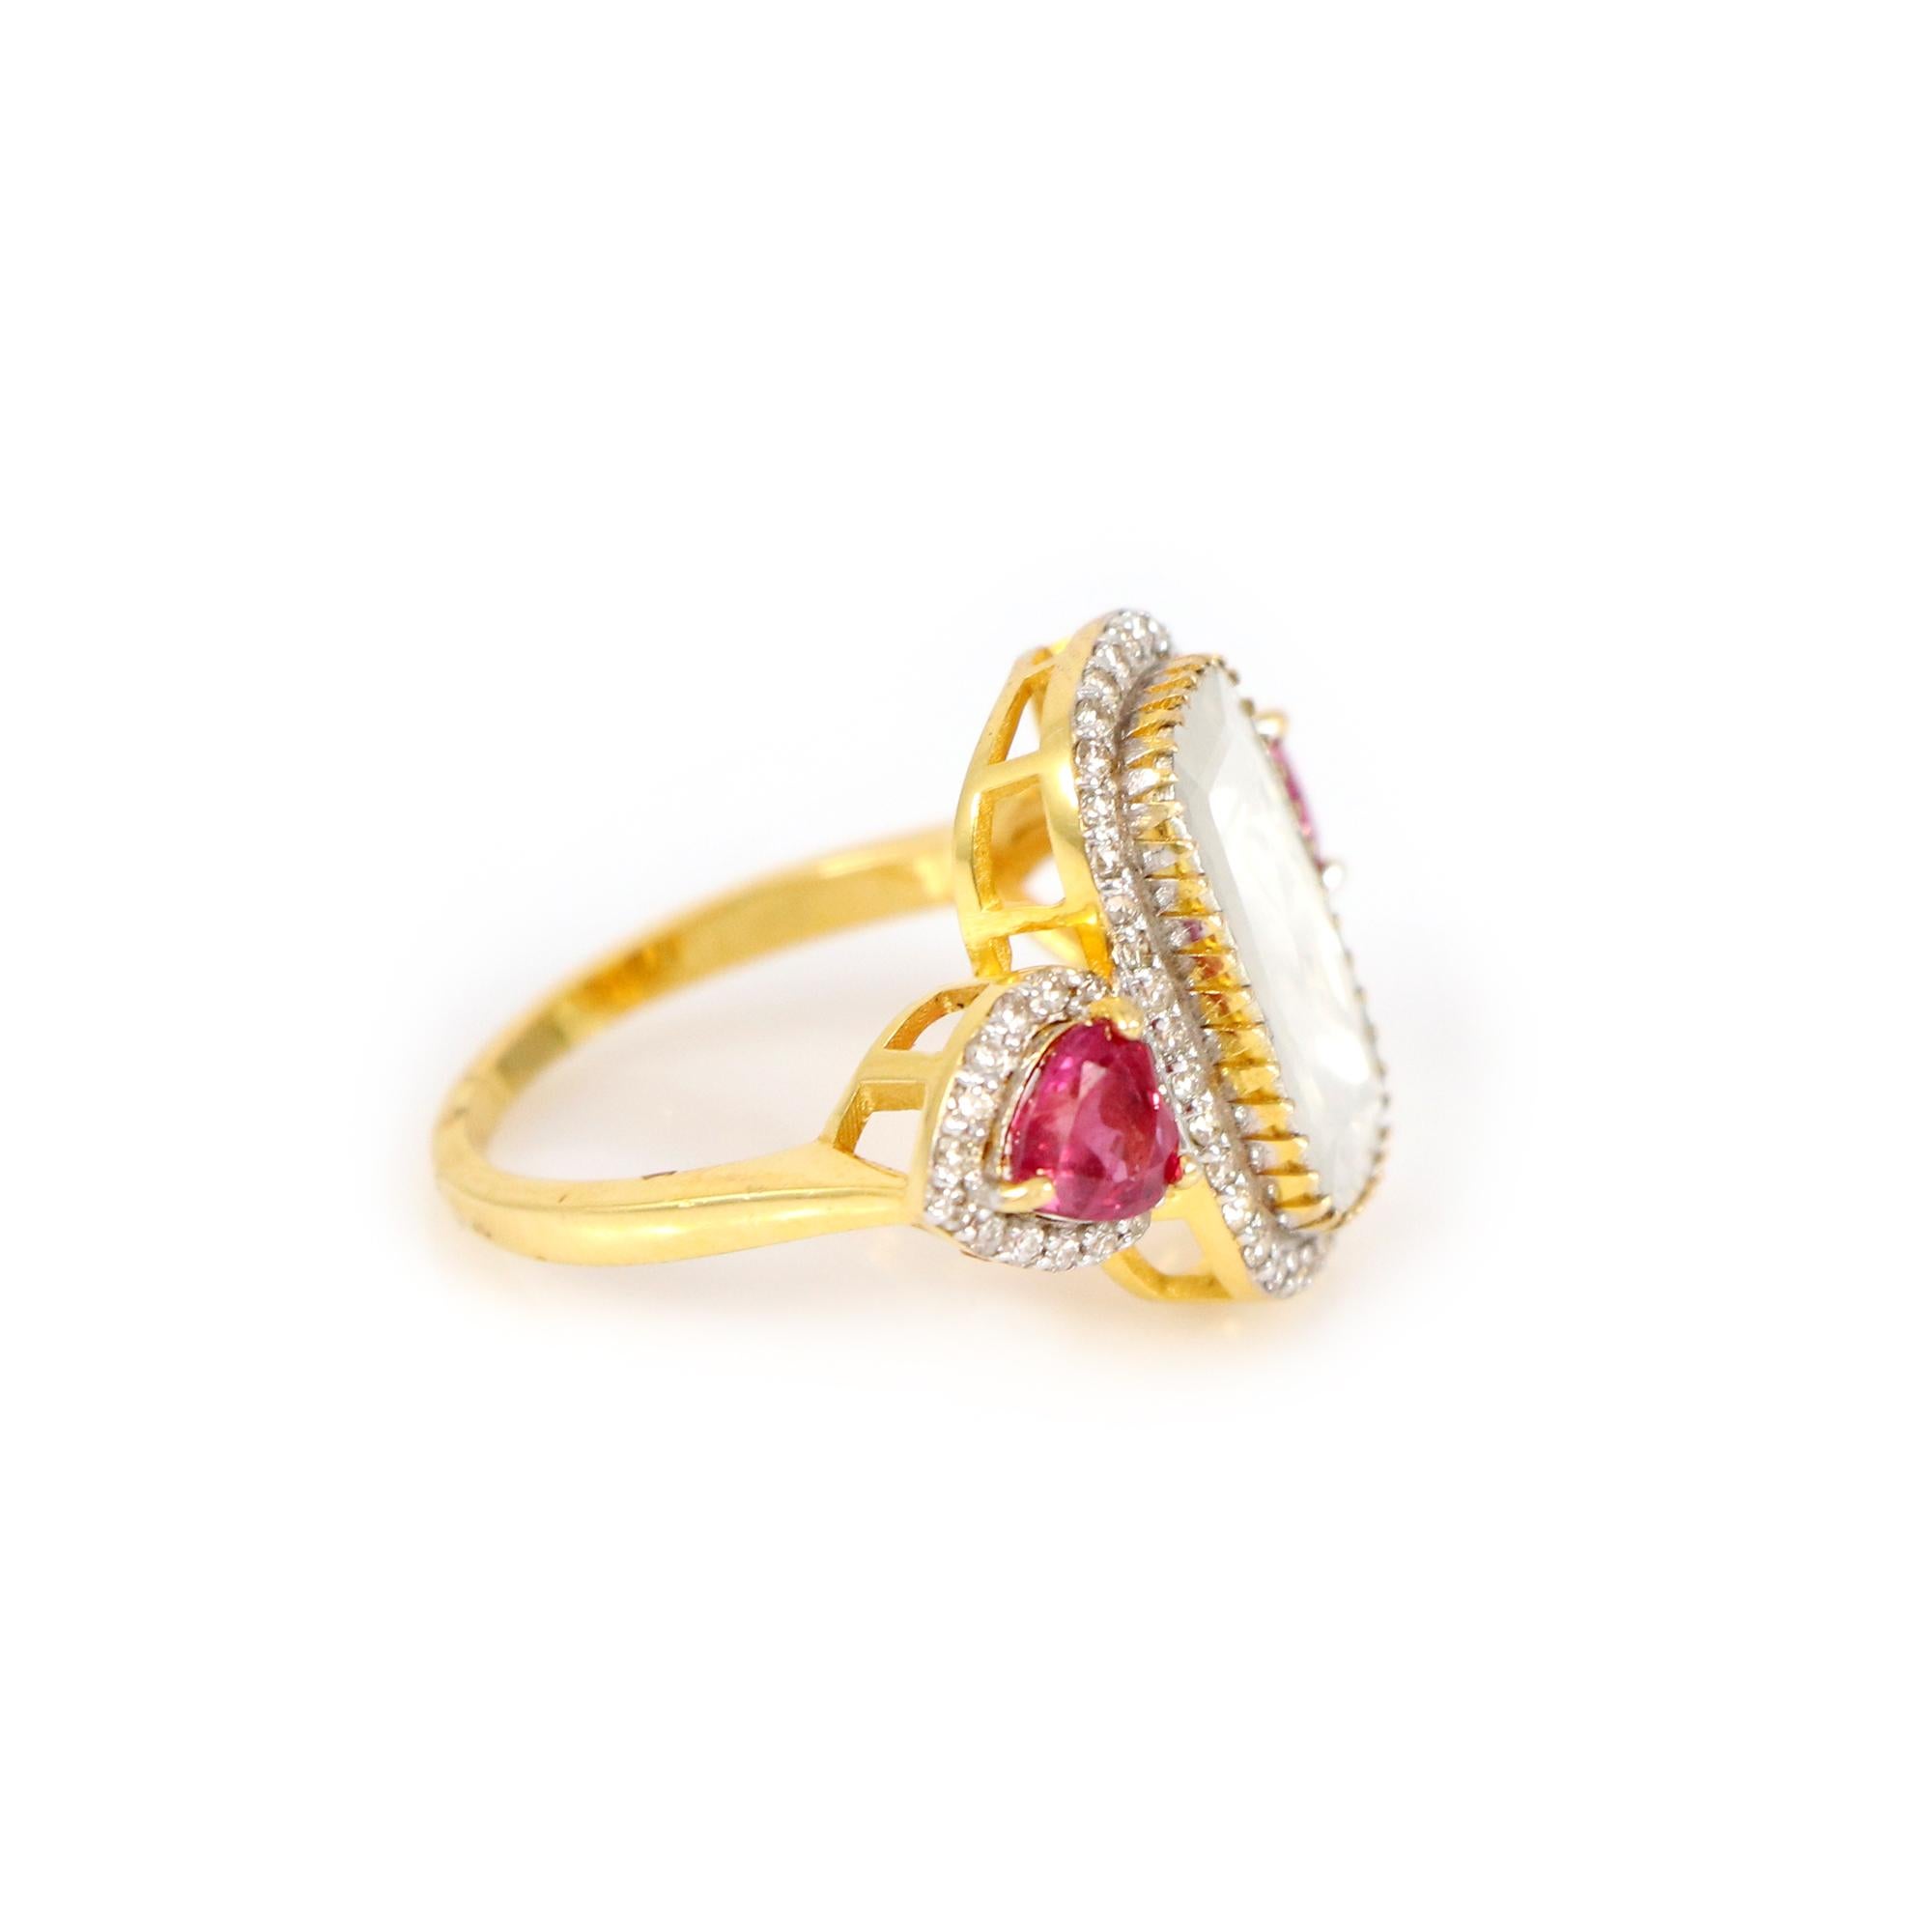 Entdecken Sie eine Welt zeitloser Schönheit mit unserem klassischen Ring aus 18 Karat Gelbgold, einem wahren Meisterwerk, das mit Diamanten im Rosenschliff, Brillanten und einem herzförmigen Rubin besetzt ist. Dieser bezaubernde Rubin in Herzform